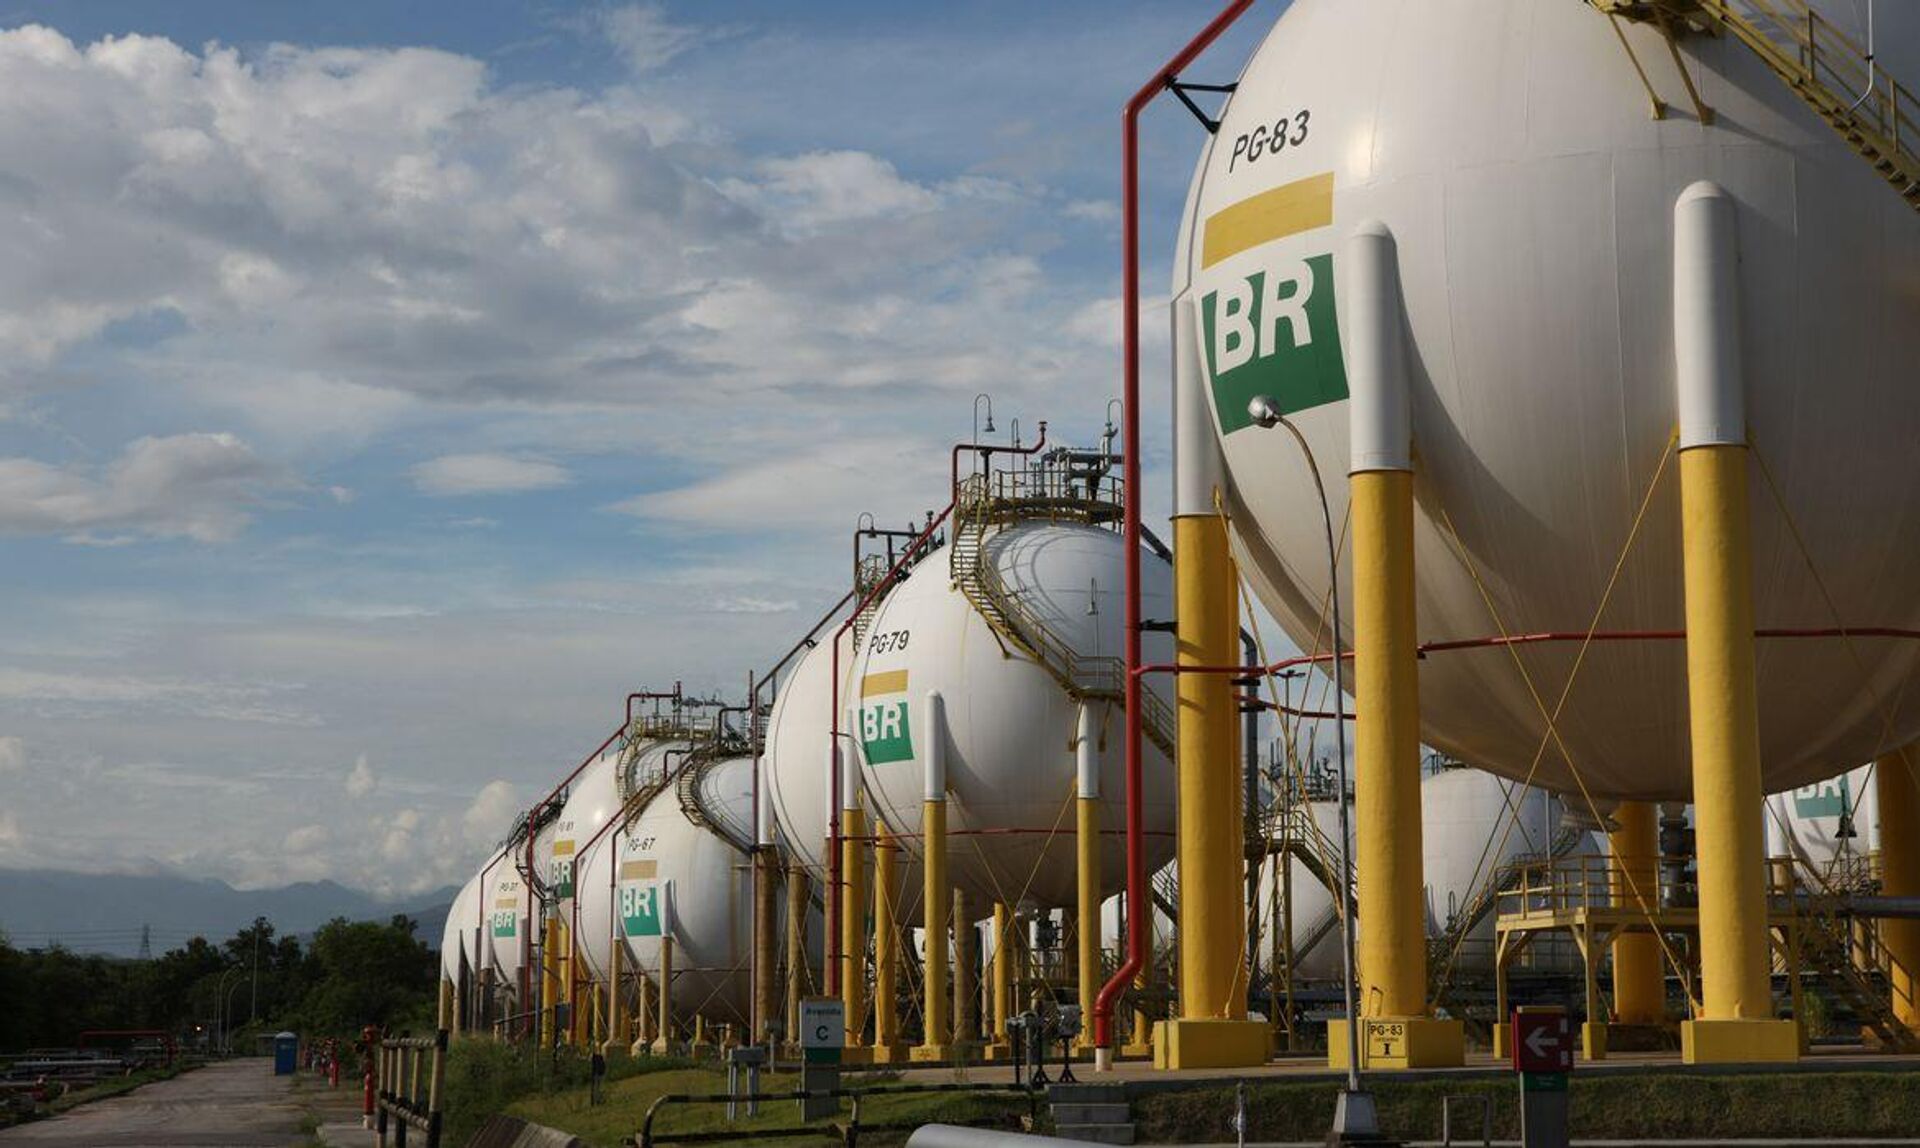 Esferas de armazenamento de gás liquefeito de petróleo (GLP) da Refinaria Duque de Caxias (Reduc), da Petrobras. Duque de Caxias (RJ), 20 de março de 2013 - Sputnik Brasil, 1920, 27.07.2023